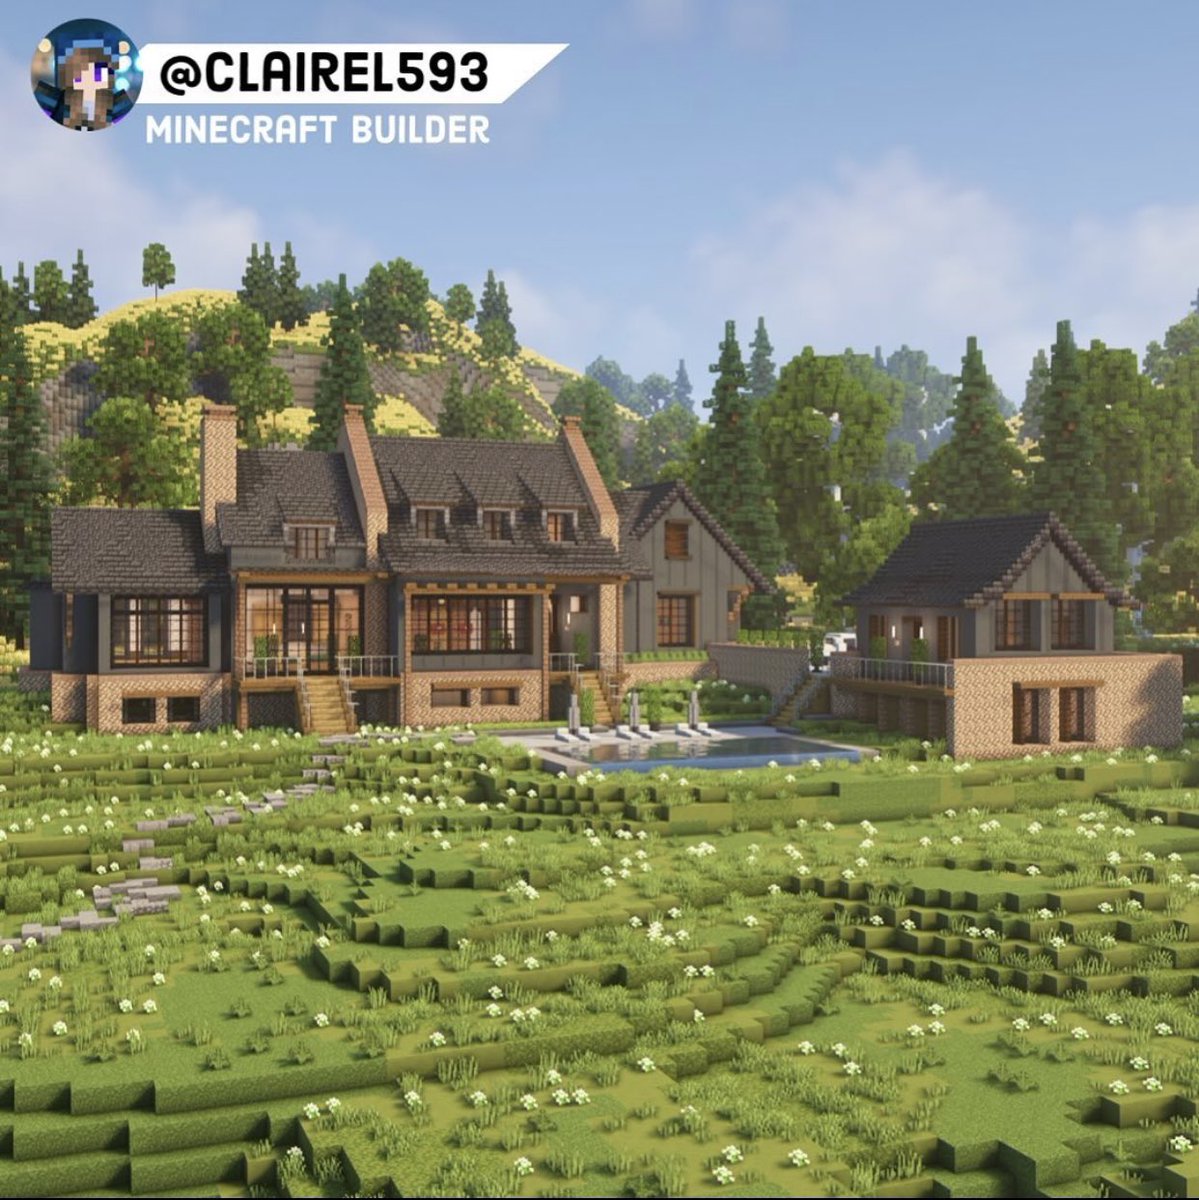 English Estate built by @clairel593 @paintergigi @waspycraft #minecraft建築コミュ #MinecraftServer #minecraftbuilds #Minecraft